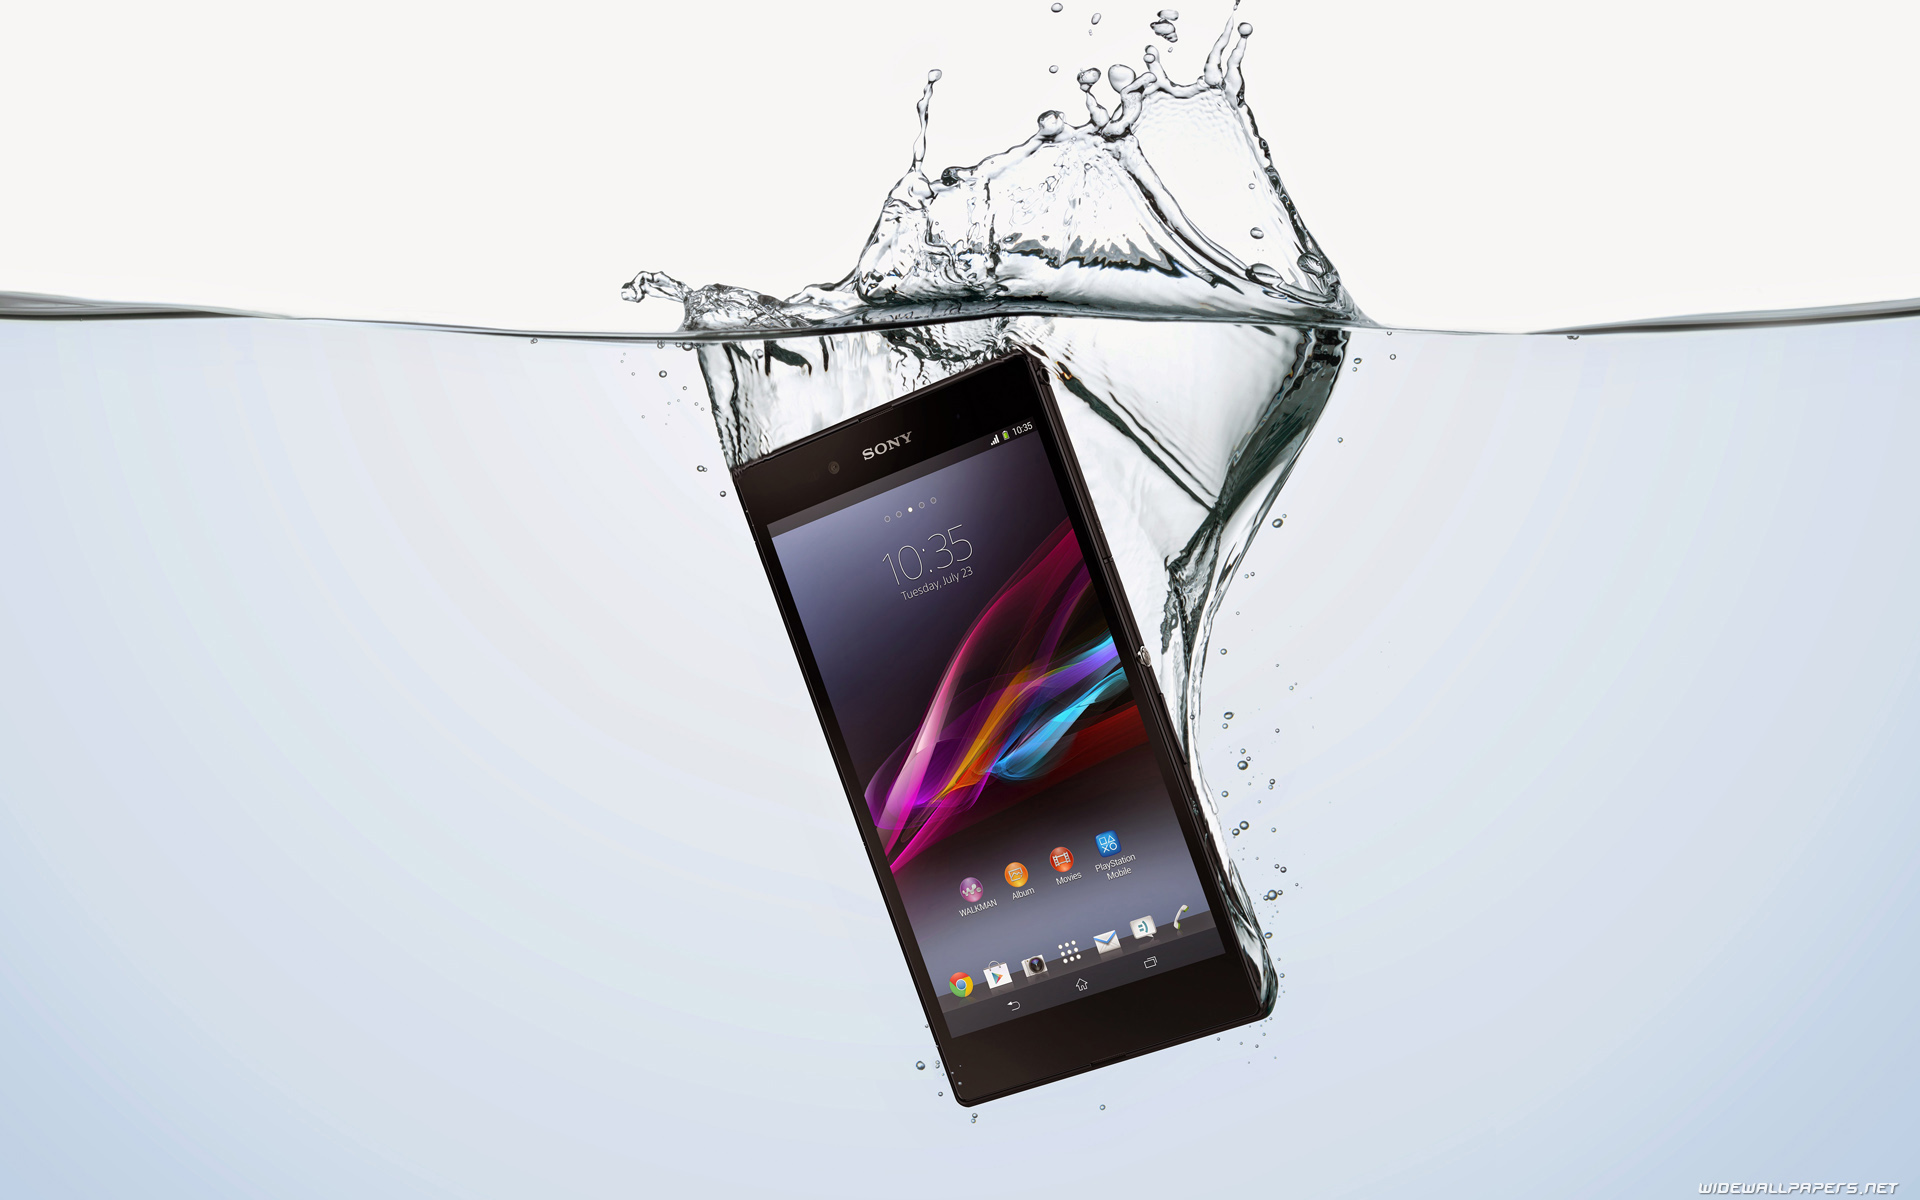 Sony Xperia Z Waterproof - HD Wallpaper 